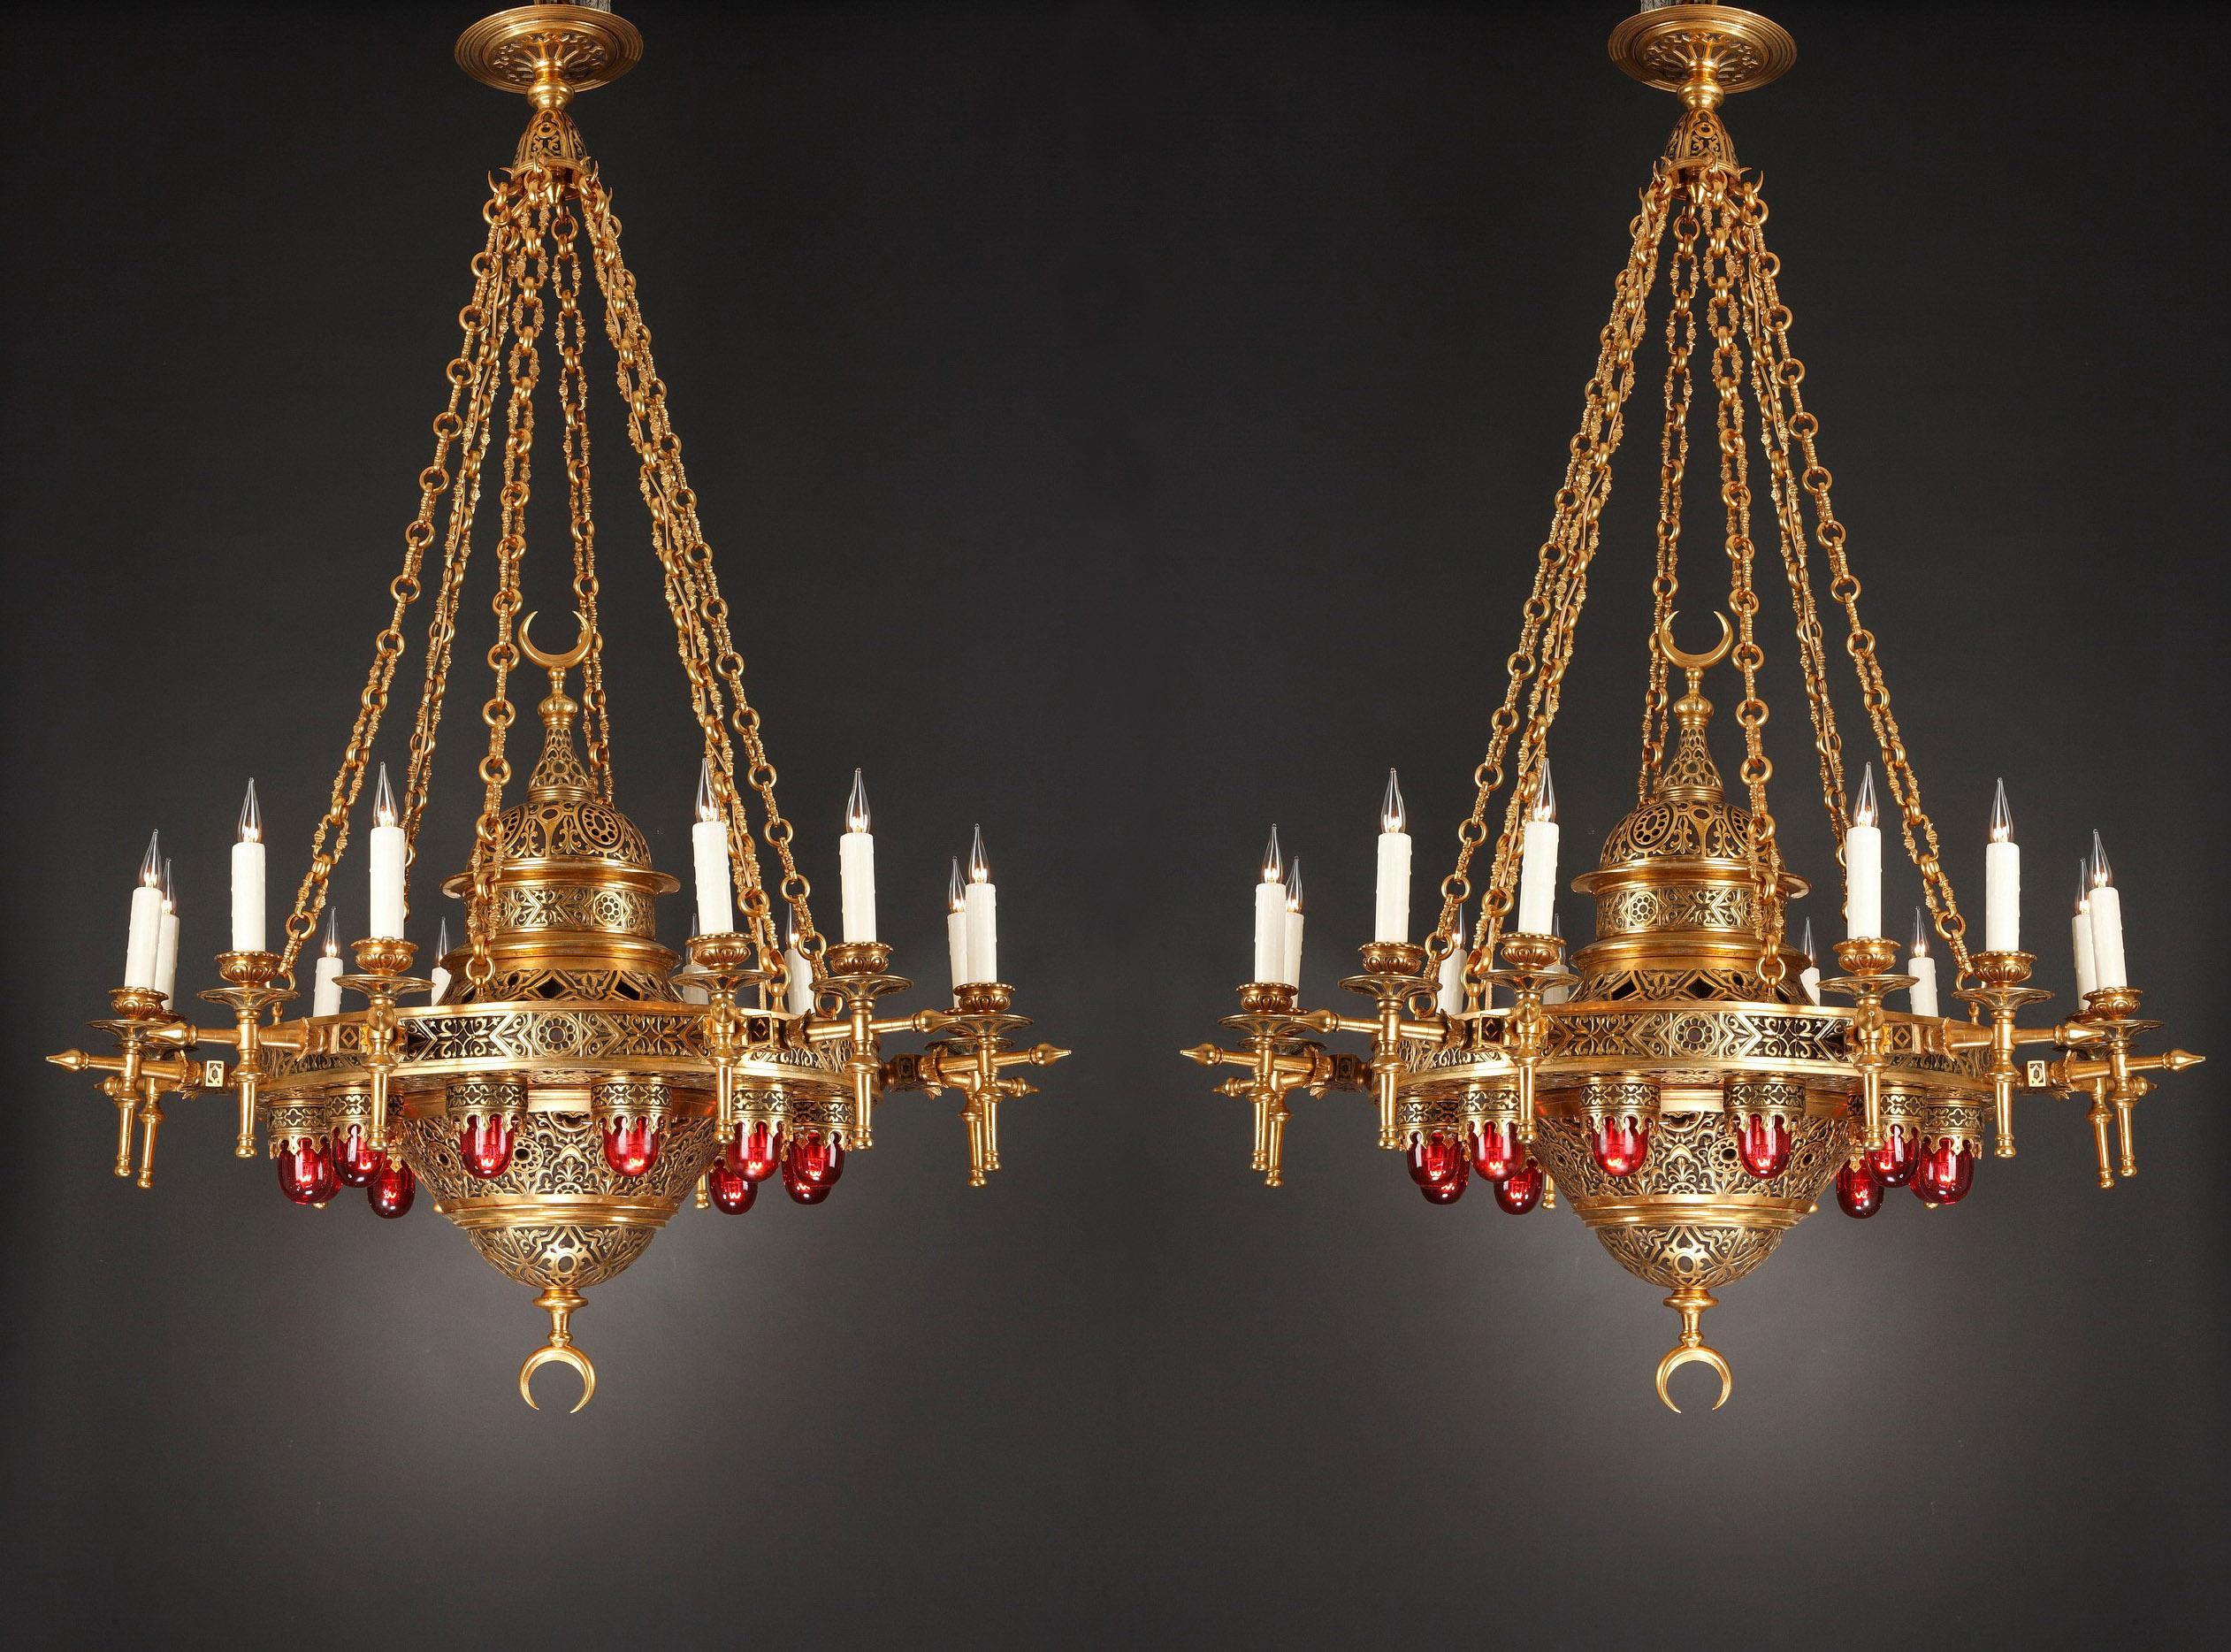 Importante paire de lustres de style oriental en bronze doré et patiné suspendus par six chaînes articulées réunies par un élégant lanterneau. De forme circulaire, elles comportent une série de douze bras de lumière autour de la couronne et douze